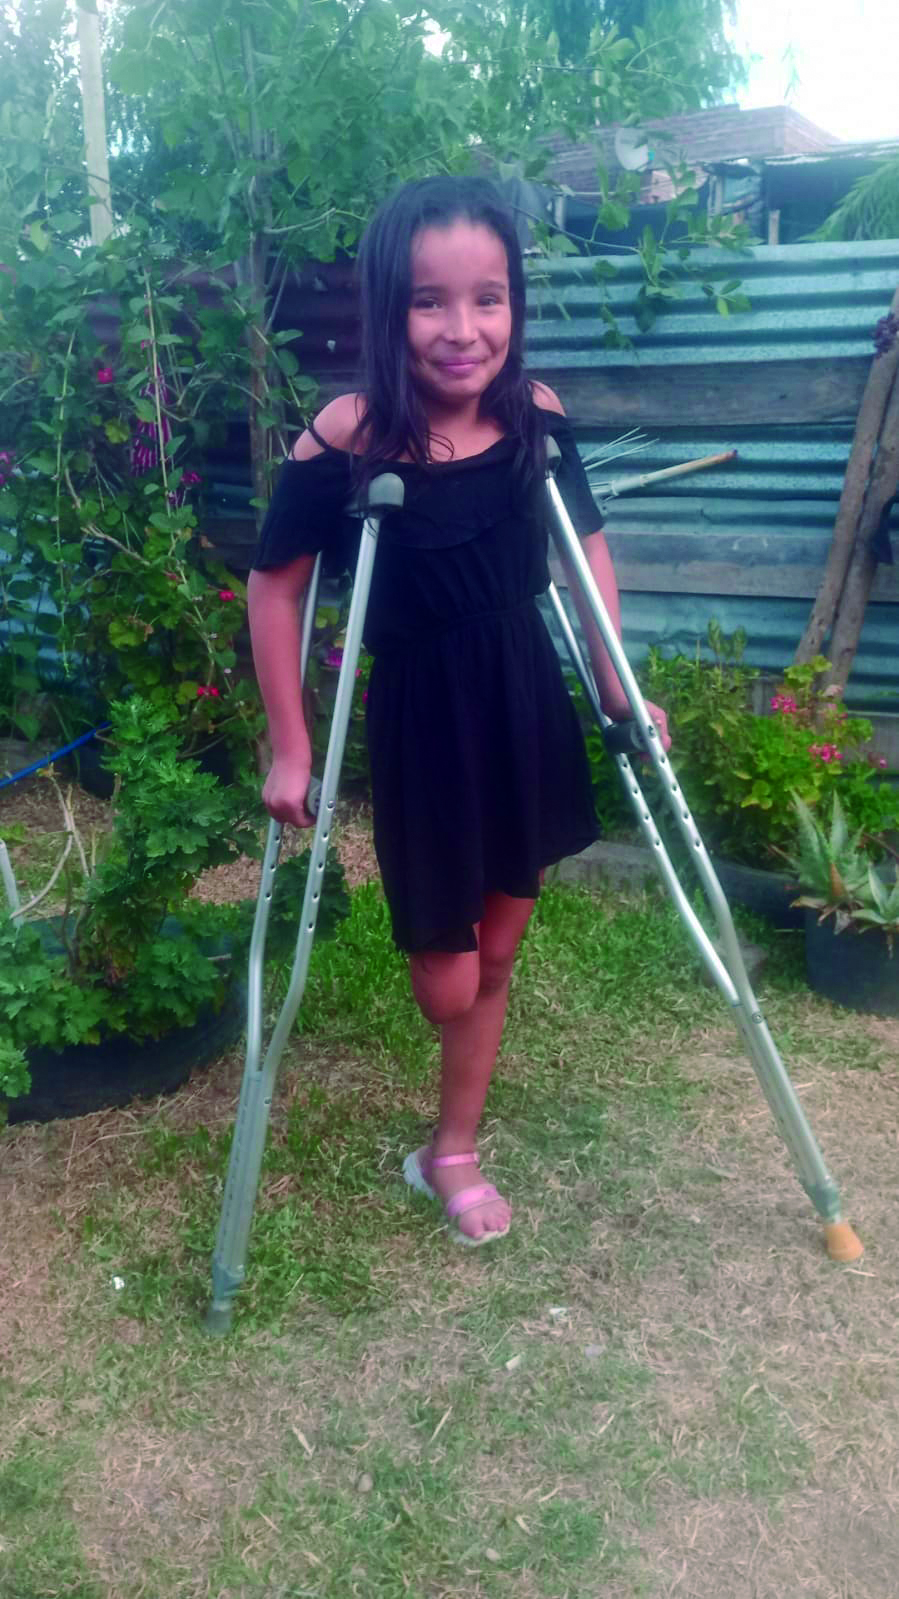 Vallolet Araujo de solo 9 años necesita una pierna ortopédica para poder mejorar su calidad de vida